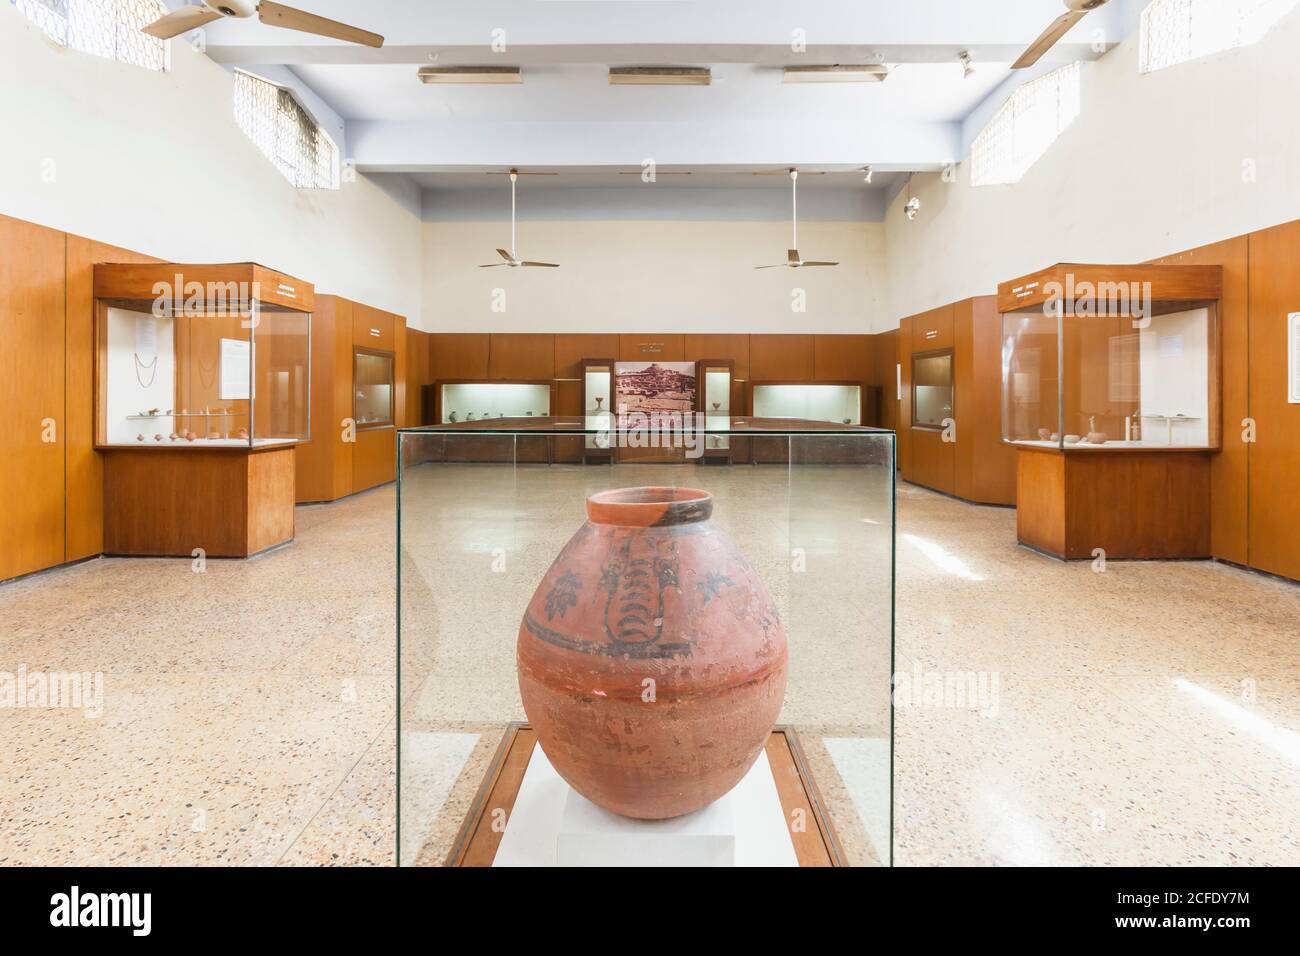 Terre cuite Grande bocal de strate, galerie de la civilisation de l'Harappan, Musée national du Pakistan, Karachi, Sindh, Pakistan, Asie du Sud, Asie Banque D'Images